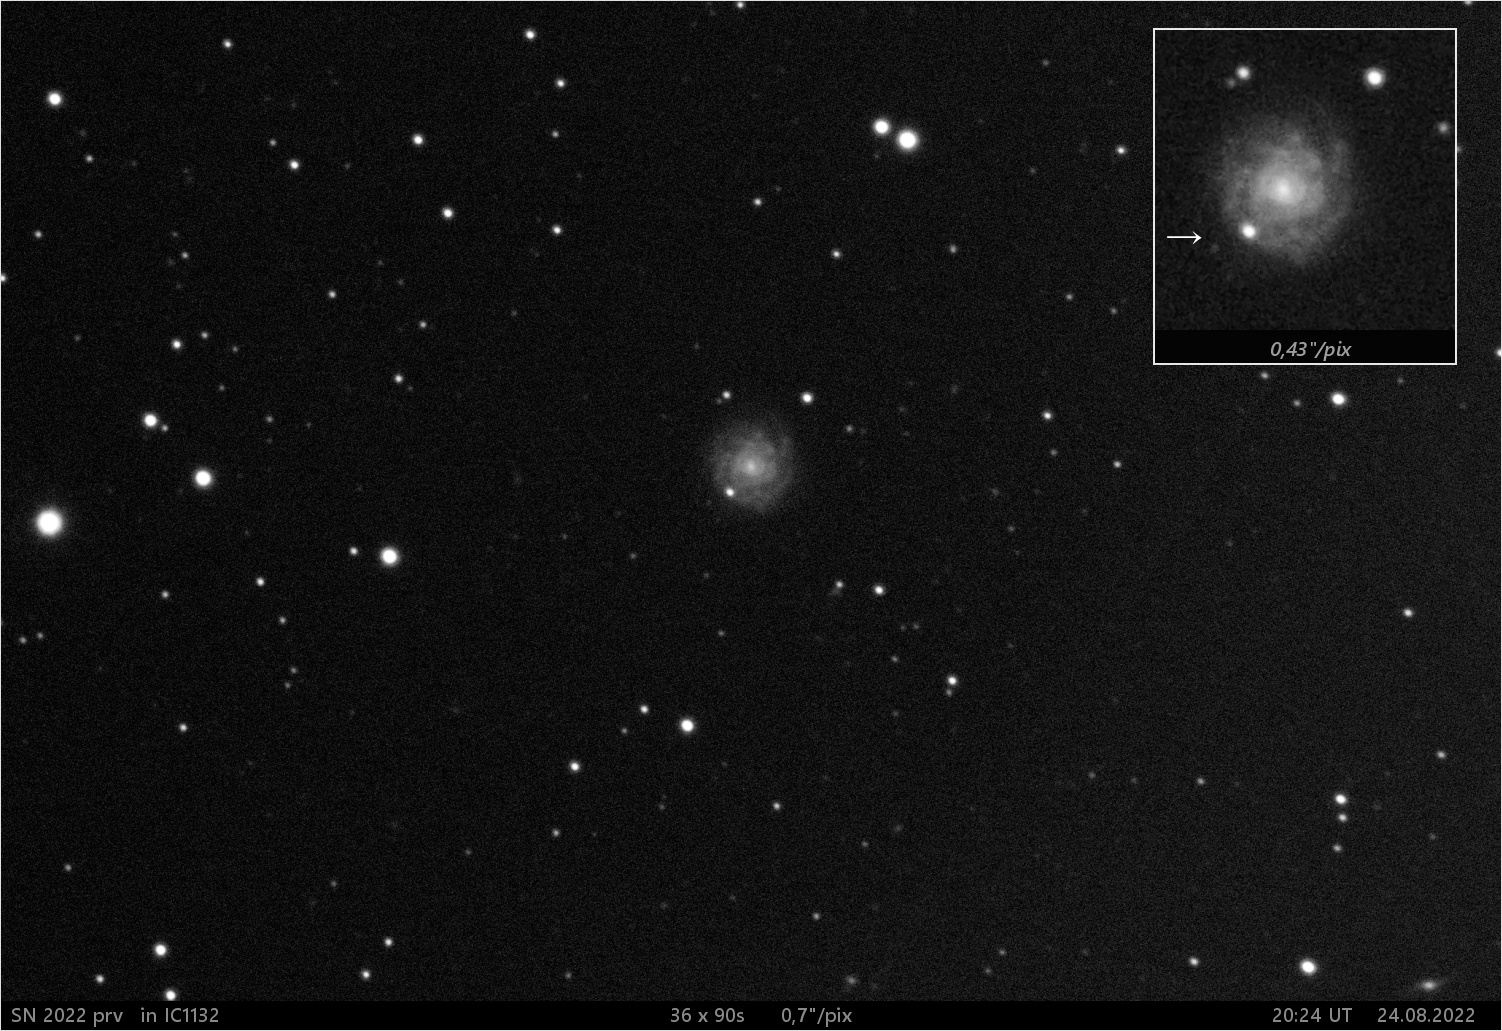 SN 2022 prv v IC1132